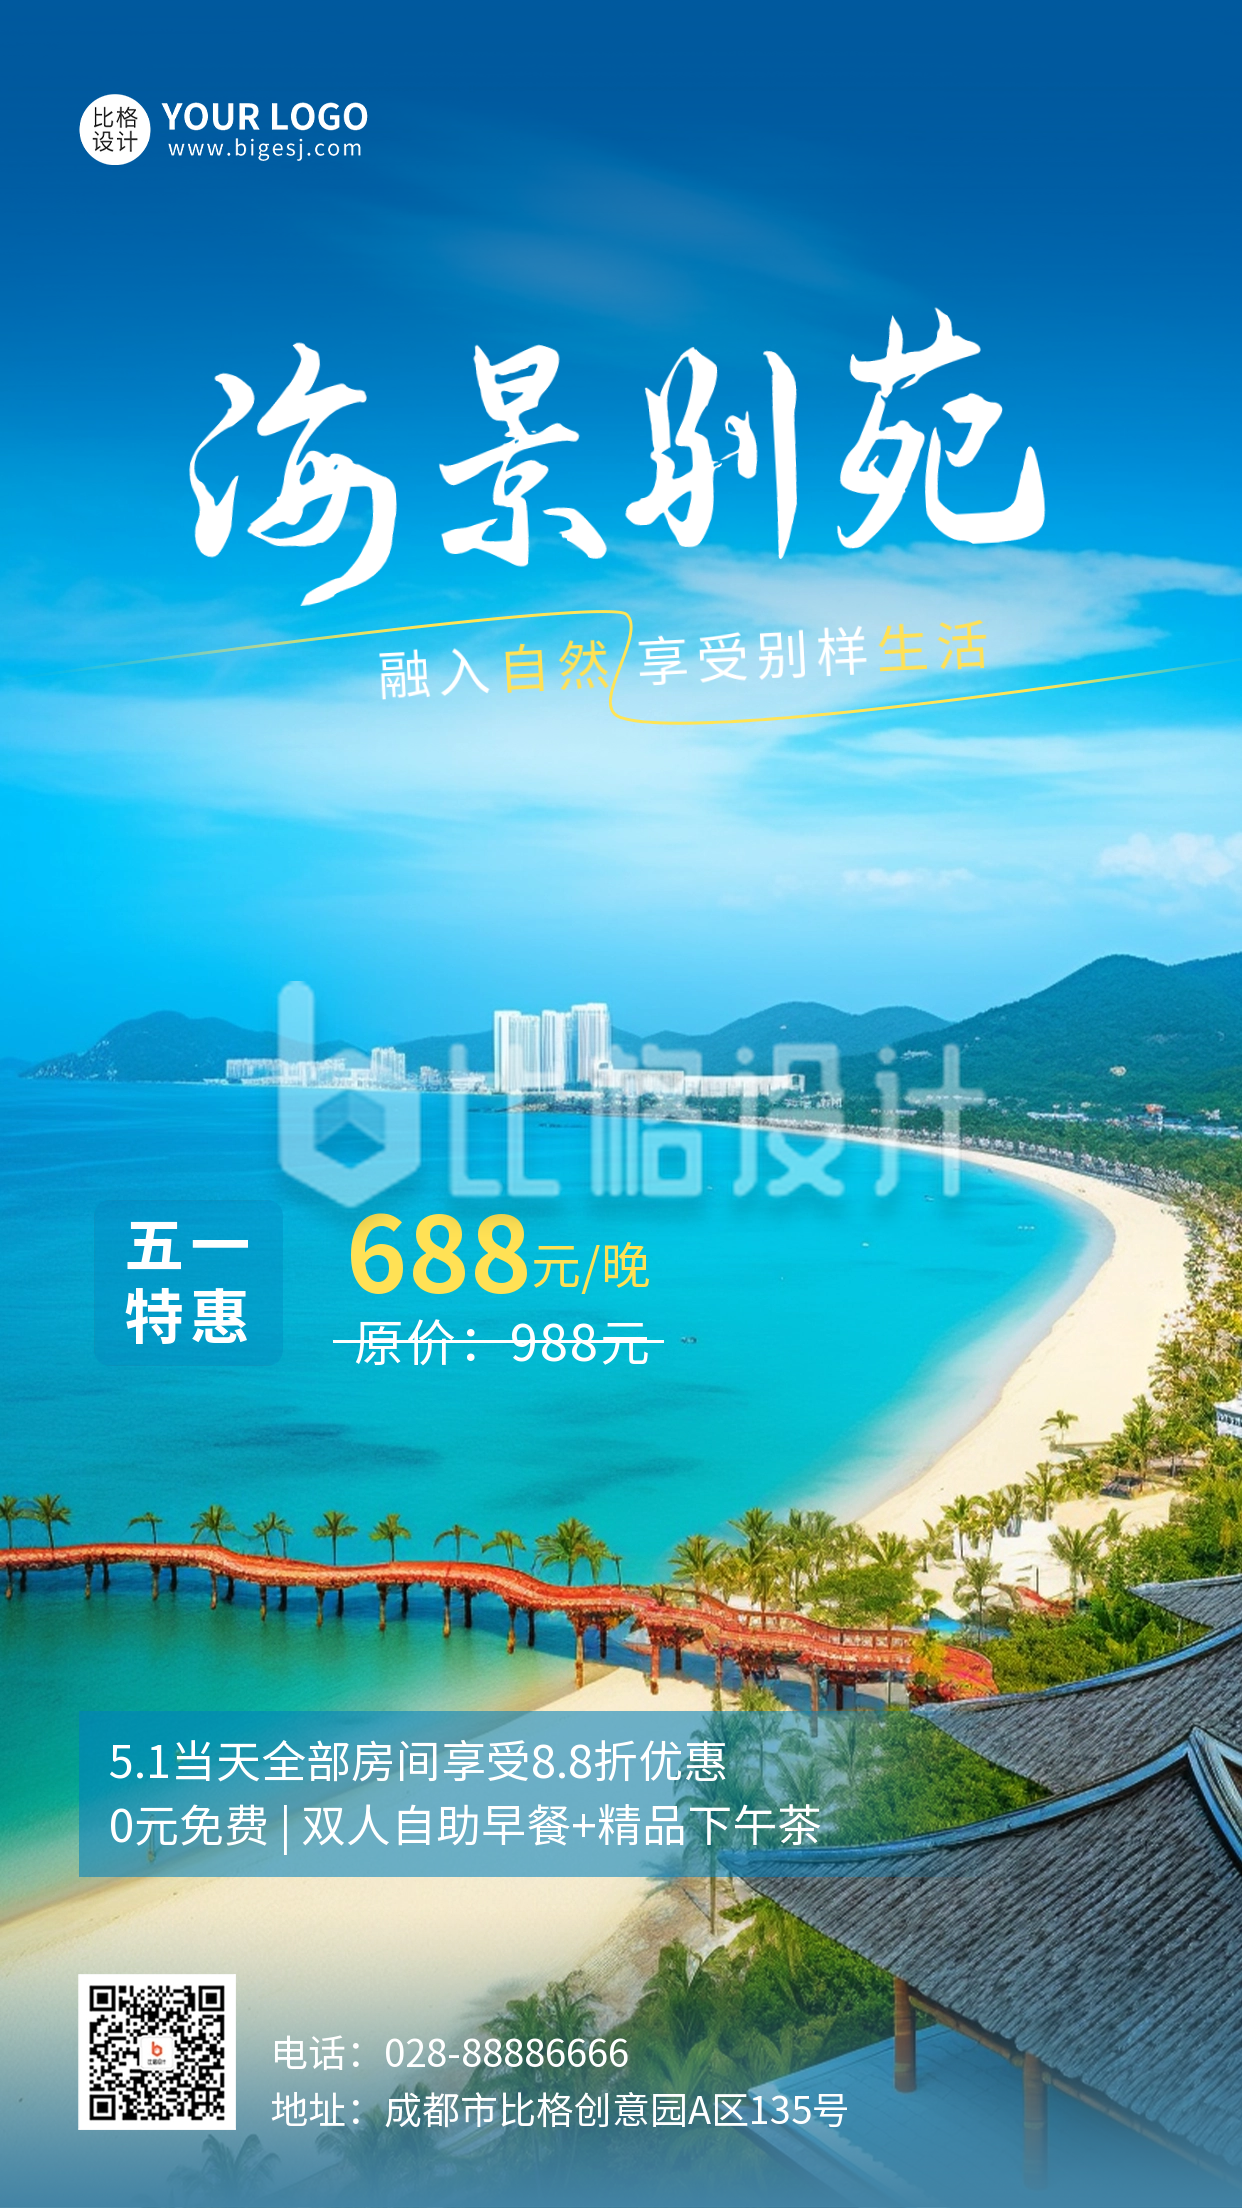 五一劳动节旅游度假酒店优惠活动宣传手机海报